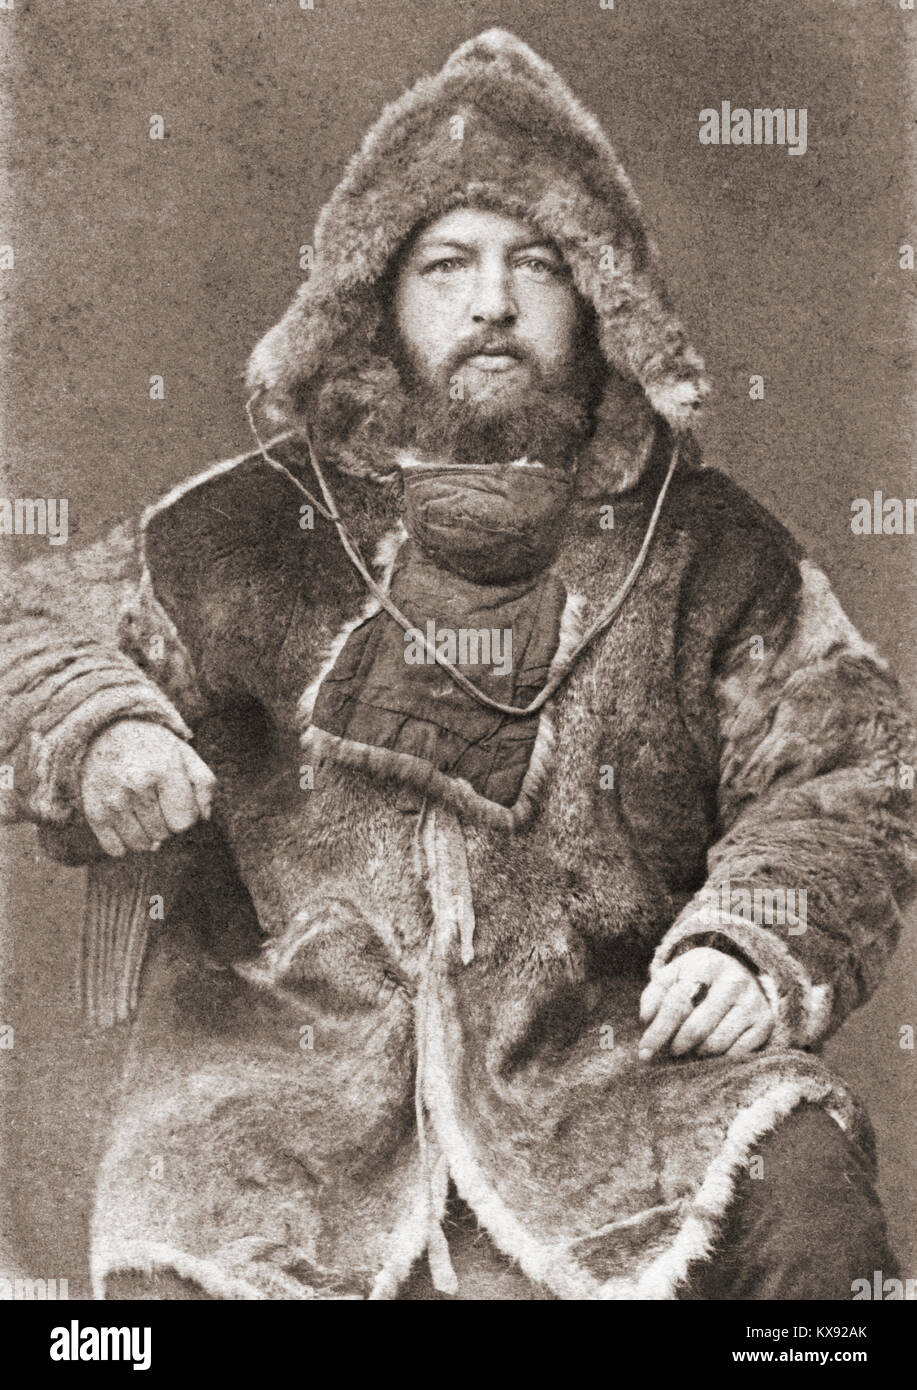 Alexander von Bunge, 1851-1930. Baltisch-deutsche Arzt, Zoologe und Arctic Explorer. Nach einem Foto aus dem 19. Jahrhundert. Stockfoto